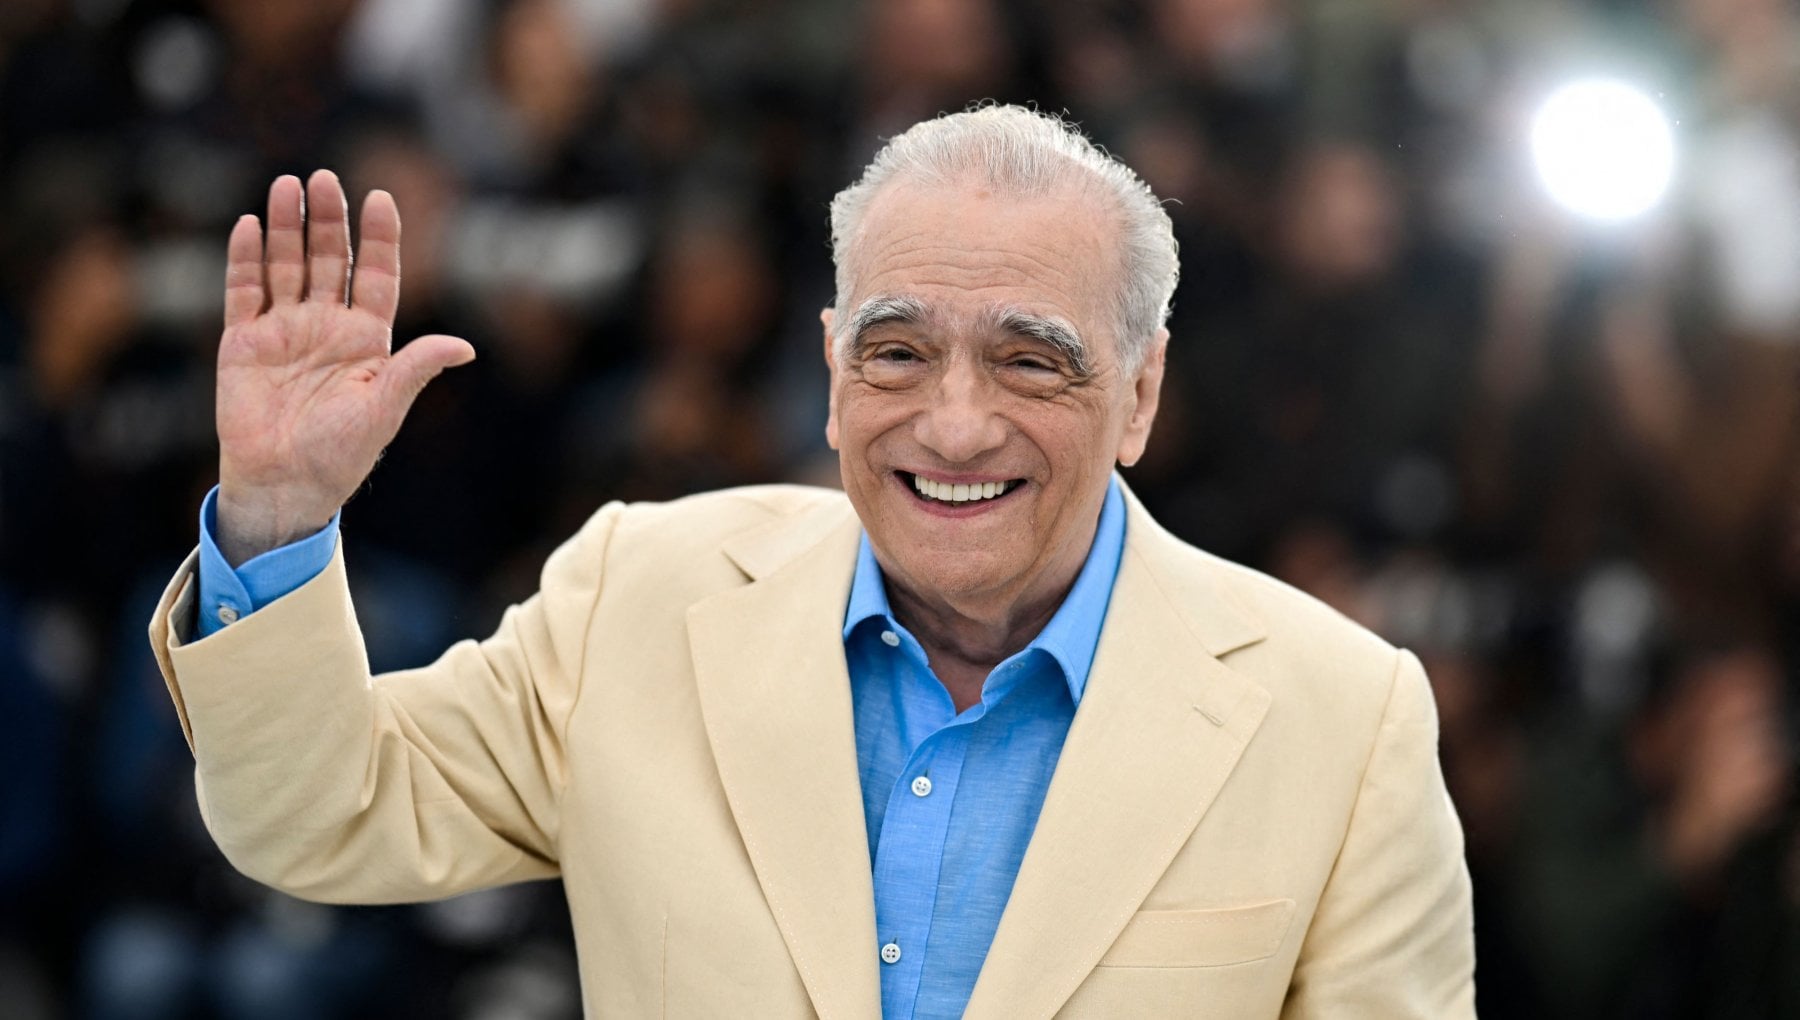 Il regista premio Oscar Martin Scorsese realizzerà una docuserie su alcuni santi